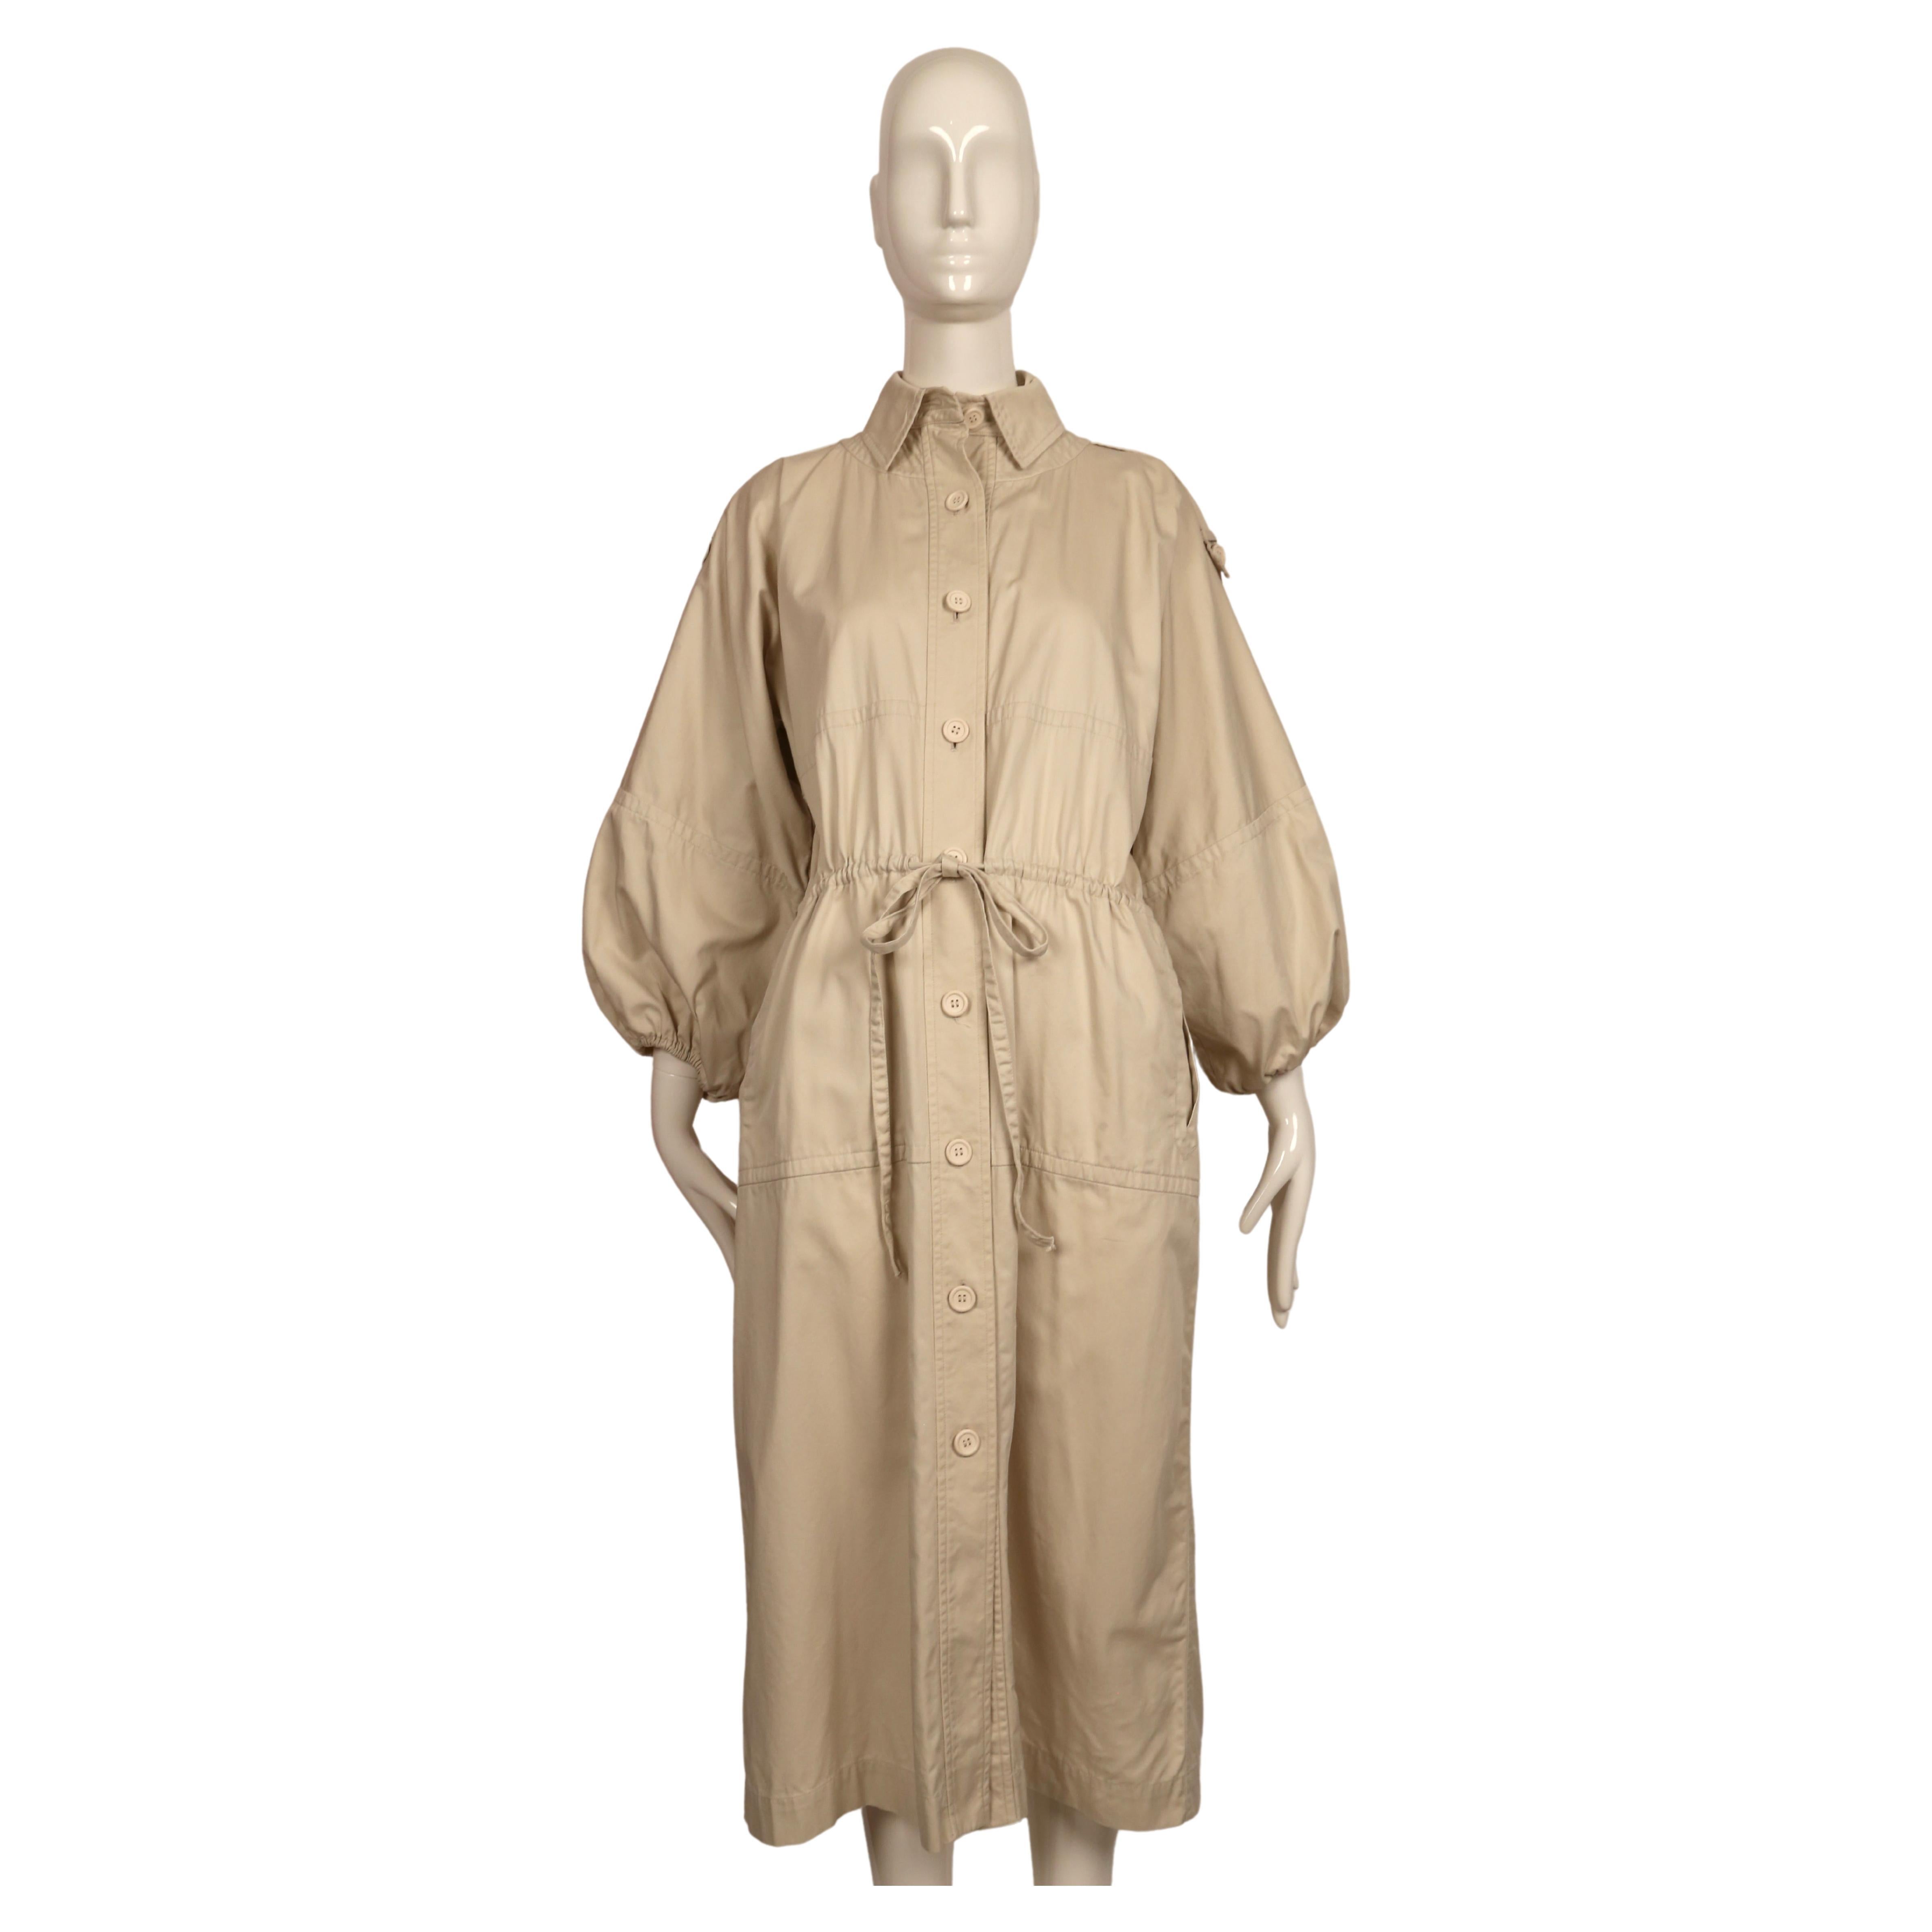 Très rare trench-coat en twill de coton fauve conçu par Yves Saint-Light tel qu'il a été vu sur le défilé du printemps 1978 en plusieurs couleurs. Ce manteau est étiqueté 36 français, mais il convient à de nombreuses tailles en raison de sa coupe